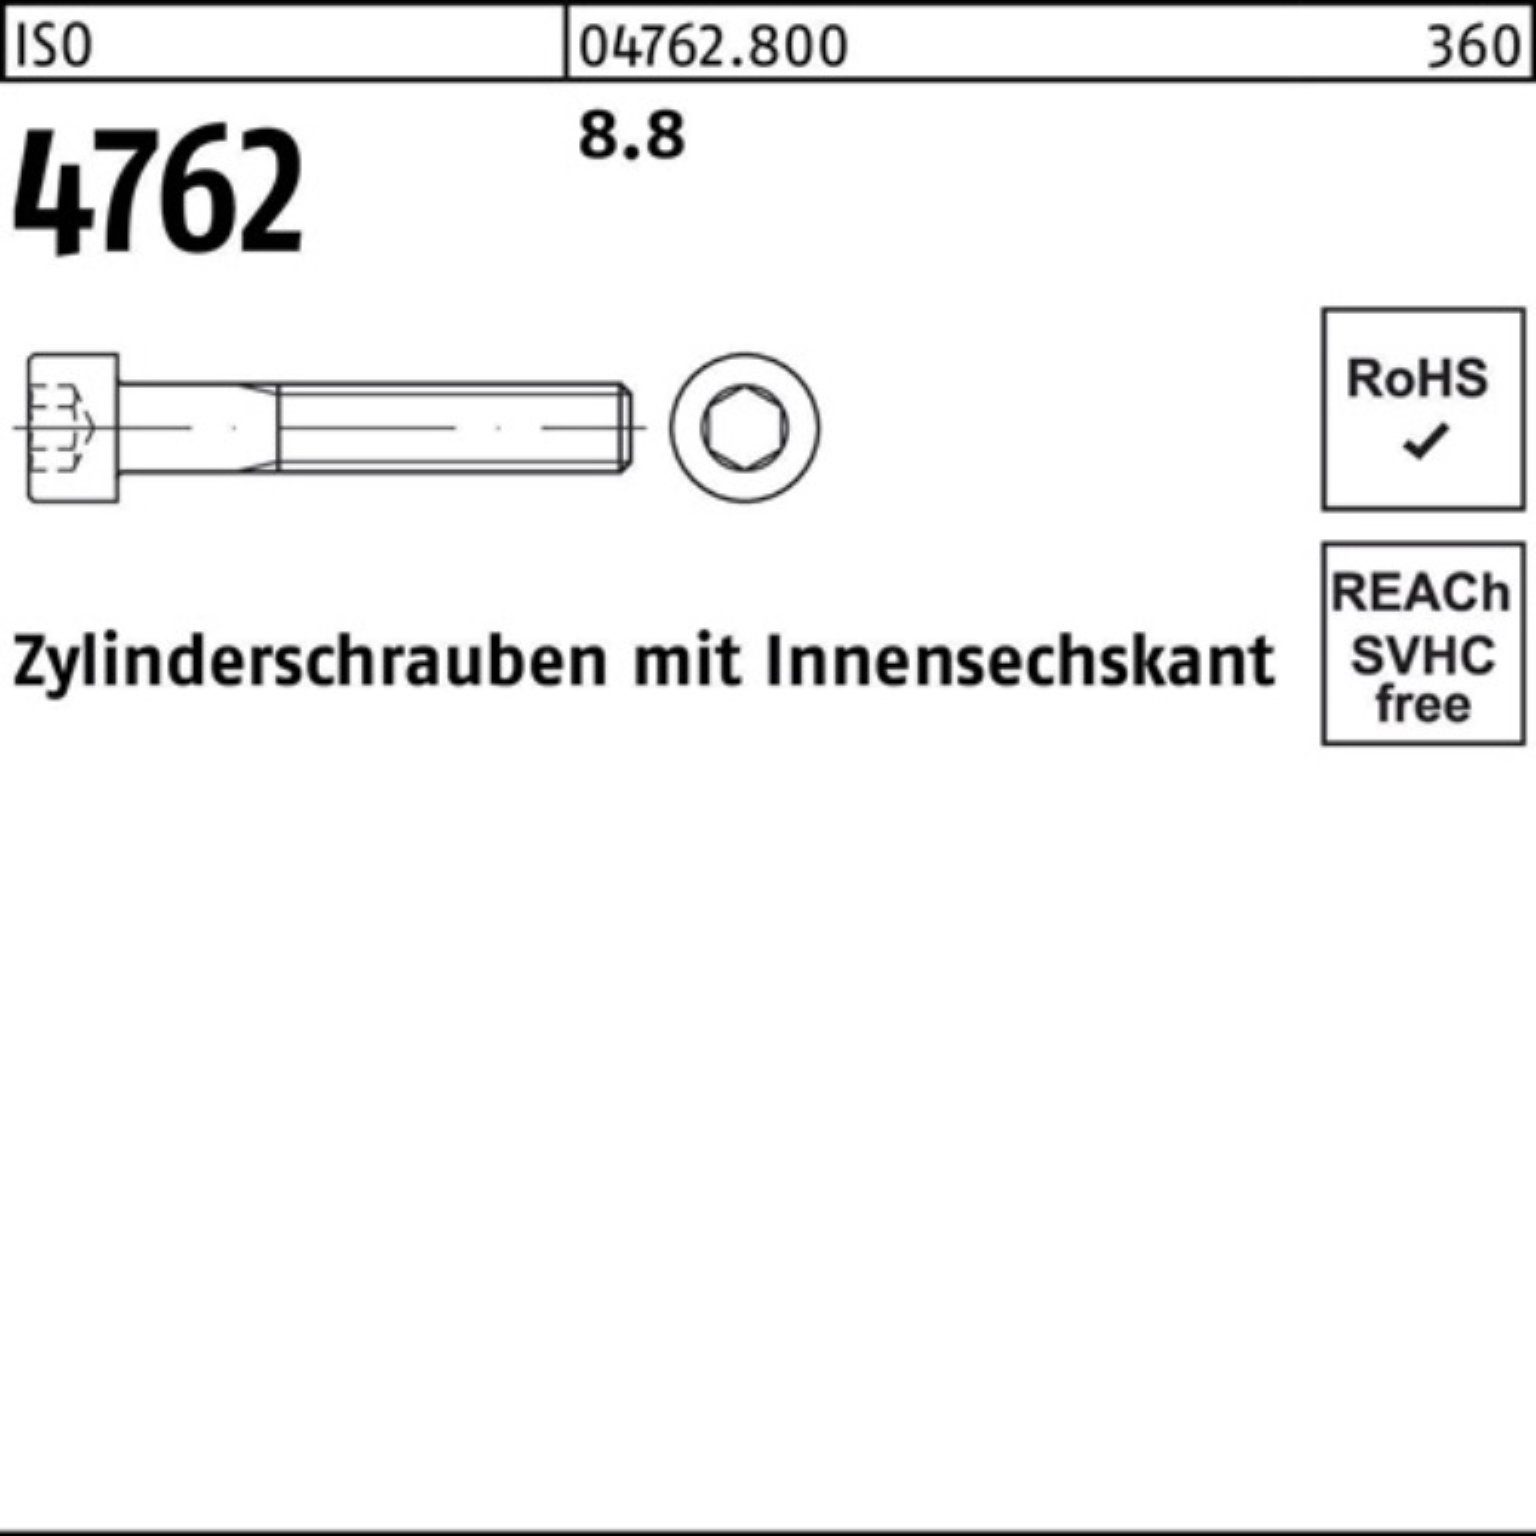 310 Zylinderschraube Reyher 4762 Stück Pack ISO Innen-6kt M24x I 1 8.8 Zylinderschraube 100er